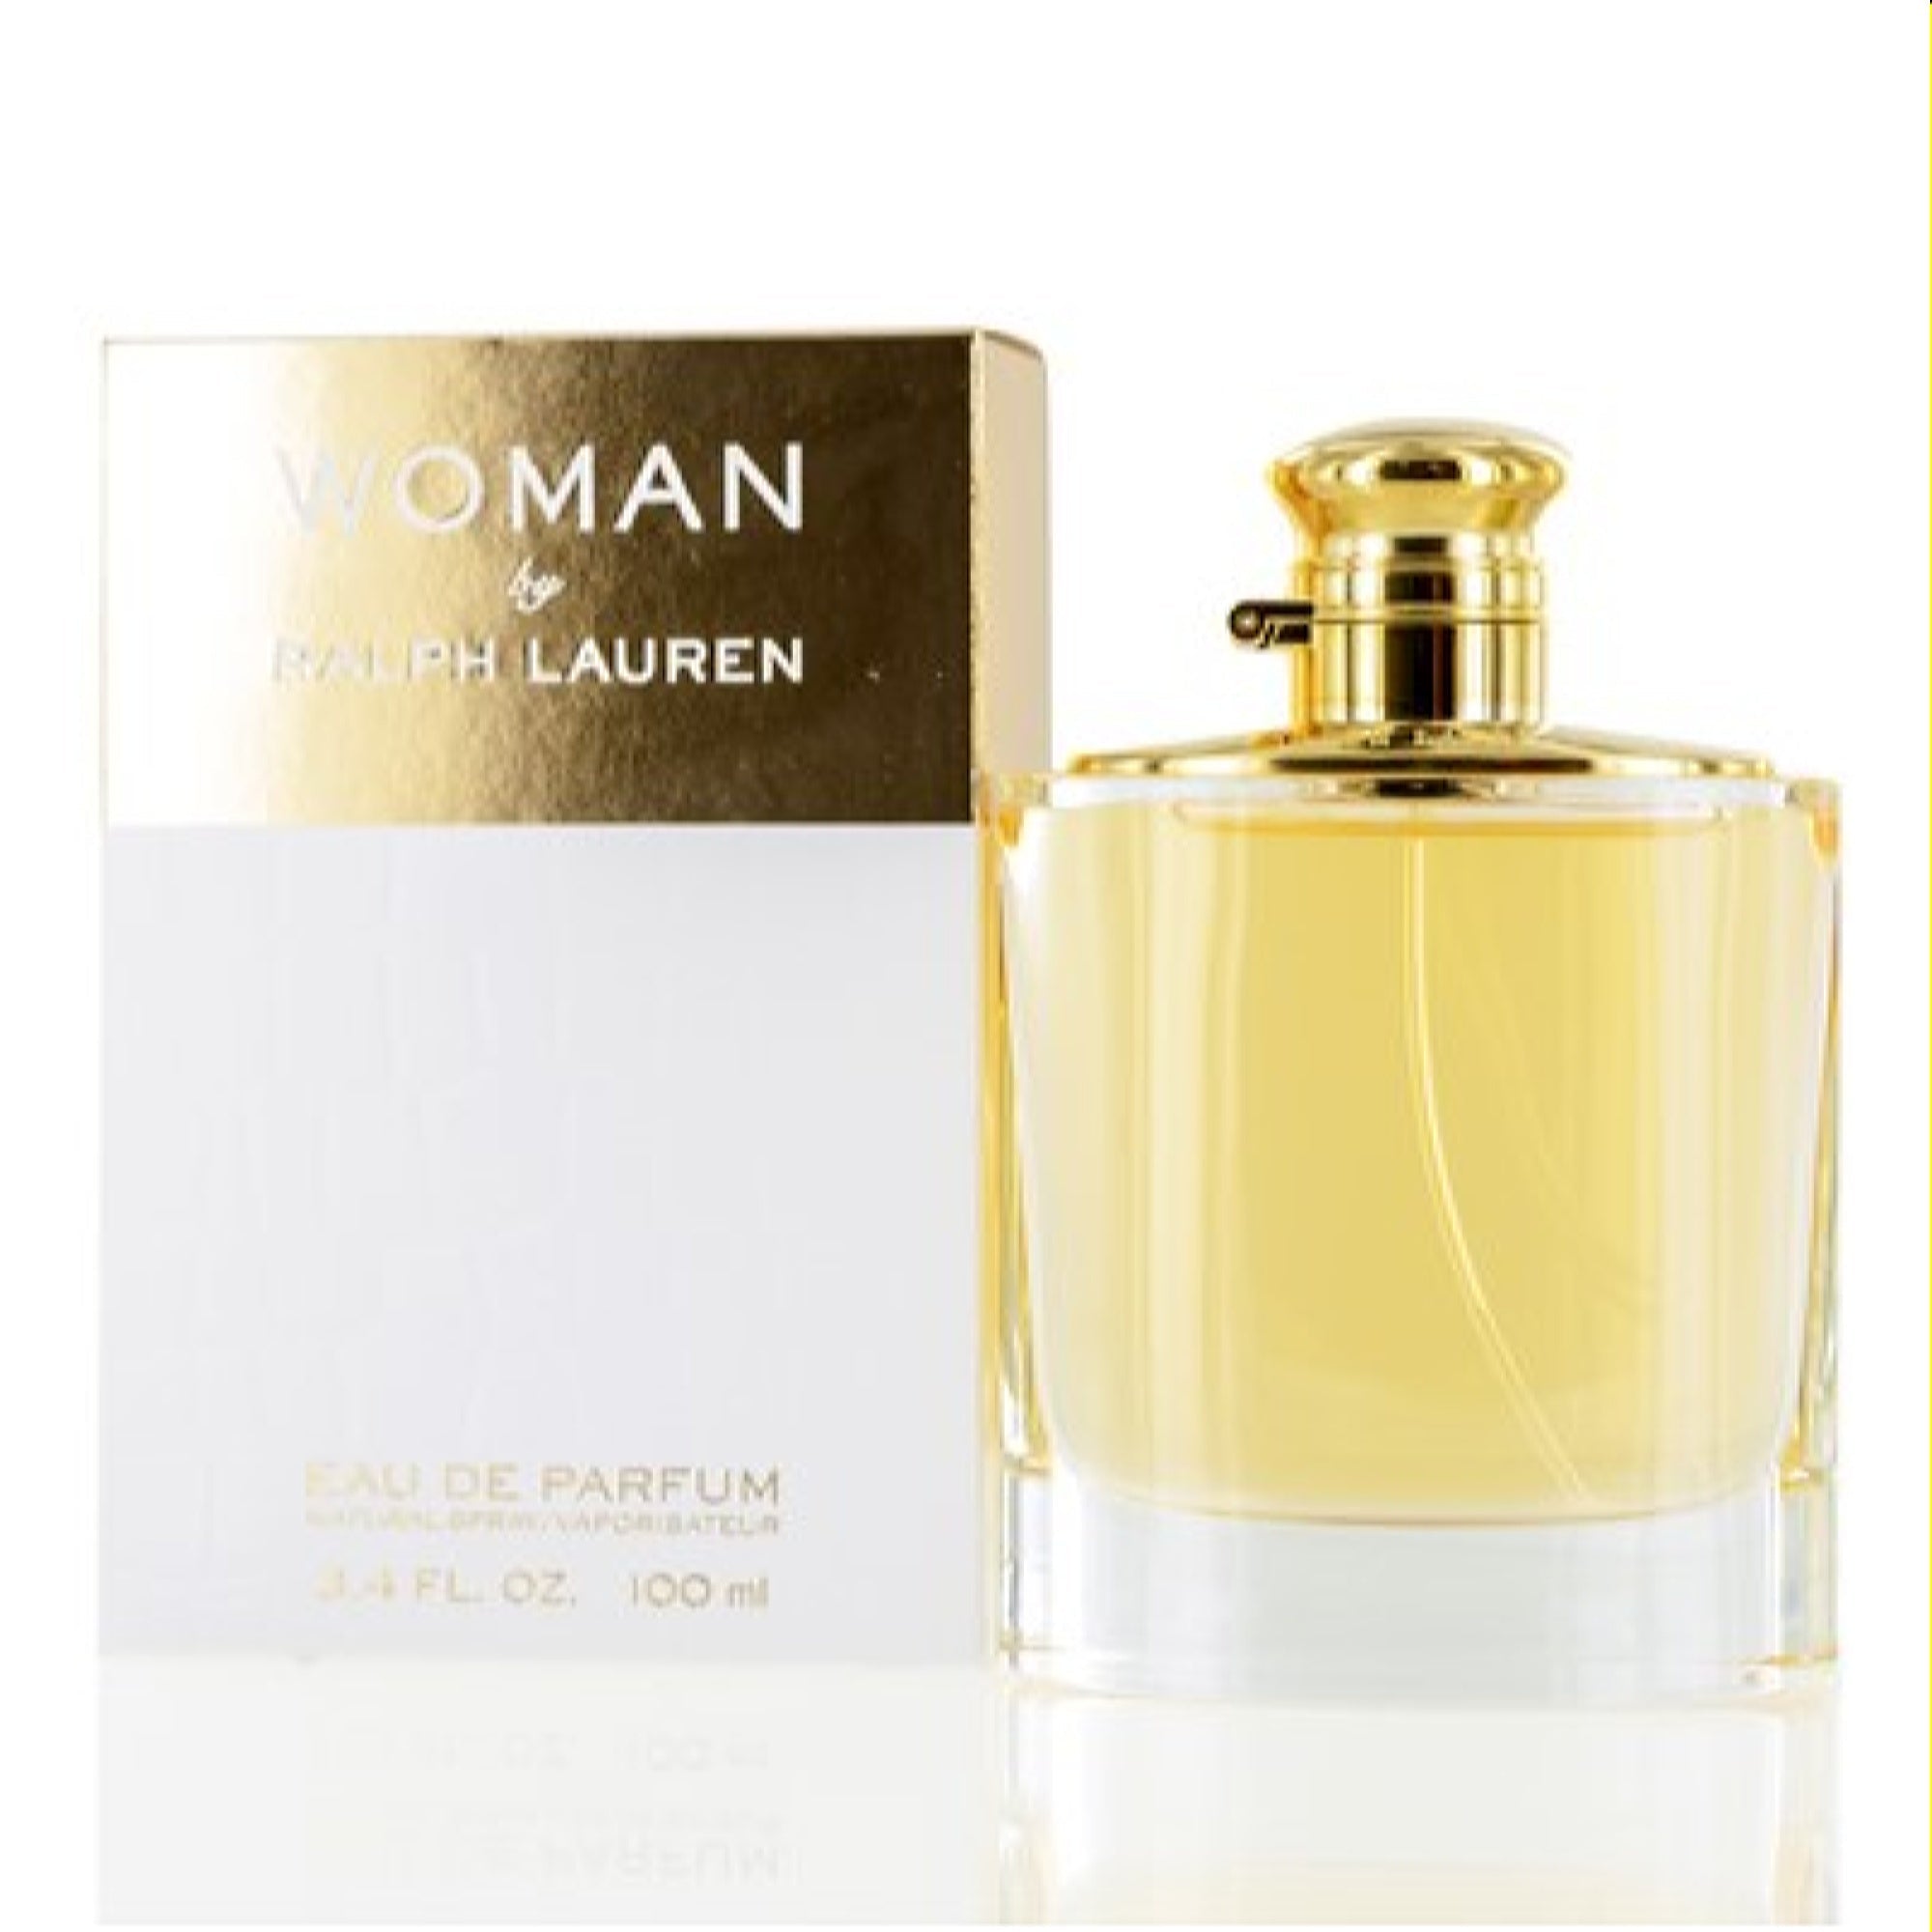 Ralph Lauren Woman by Ralph LaurenEau De Parfum Spray 3.4 oz 